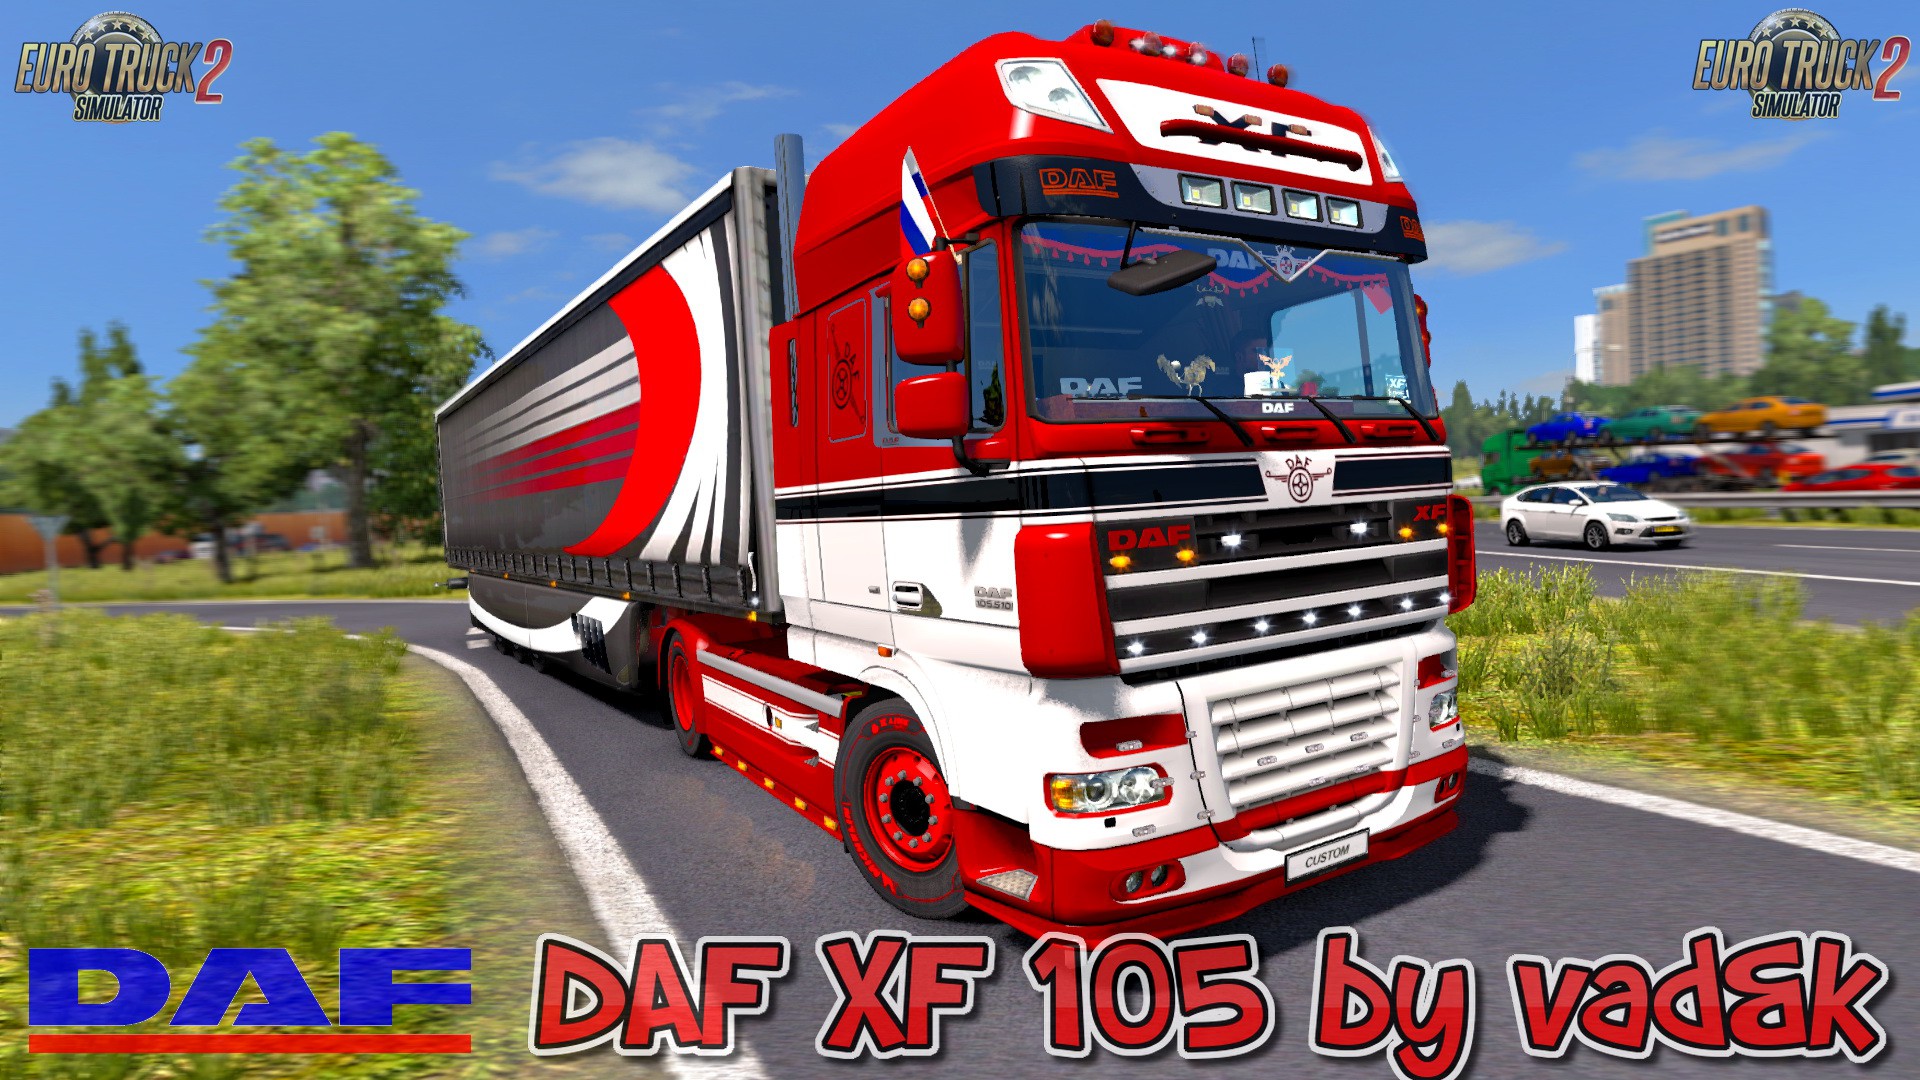 Daf Xf 105 V68 By Vadandk 135x Ets2 Mods Euro Truck Simulator 2 Mods Ets2modslt 5974